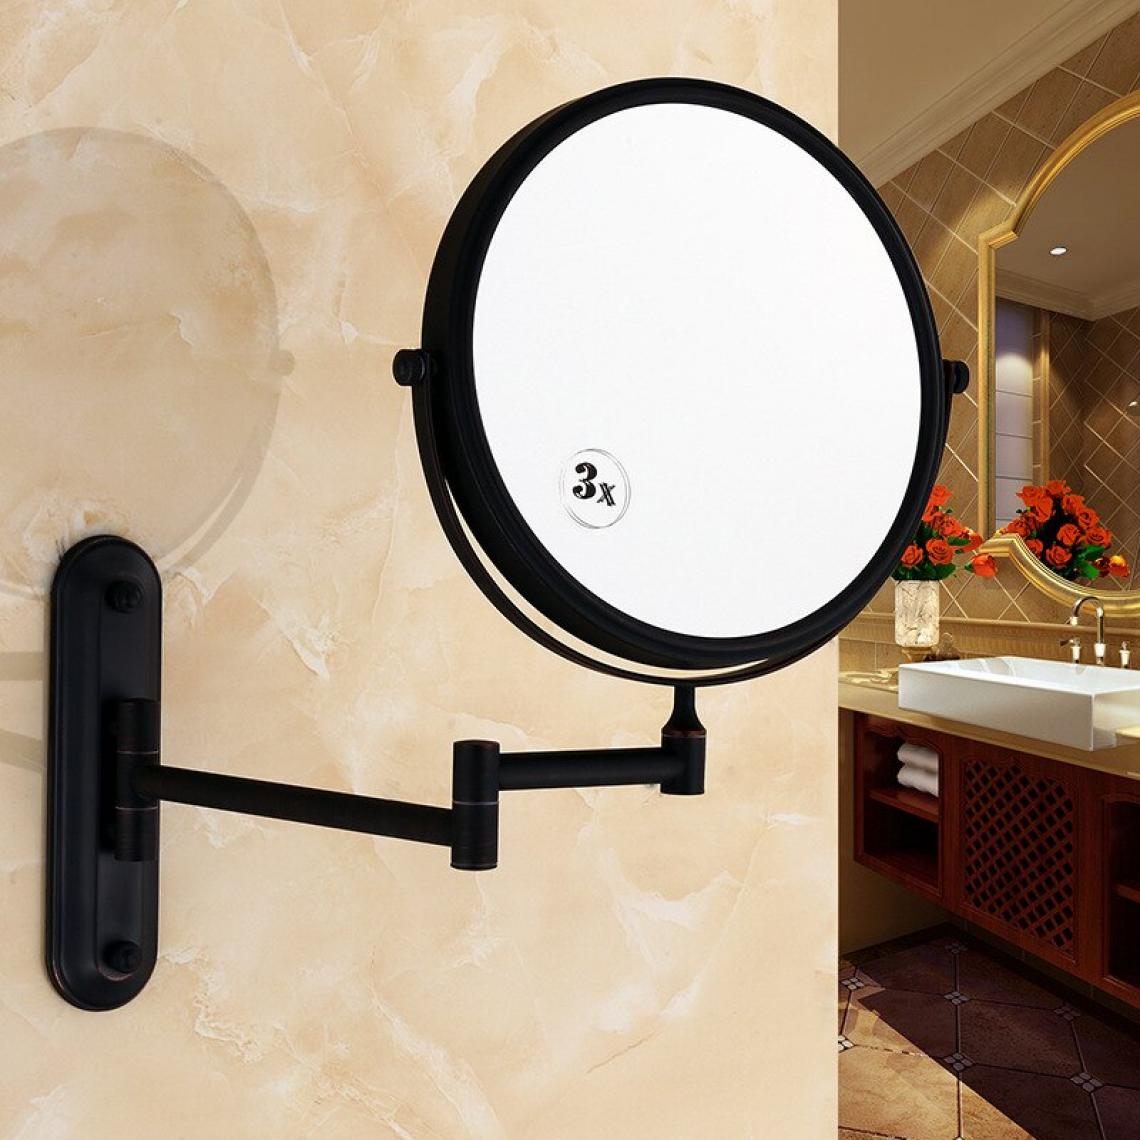 Universal - Miroir de salle de bains montage mural 8 pouces laiton loupe huile noire pliant miroir de maquillage miroir de maquillage madame cadeau |(Le noir) - Miroir de salle de bain